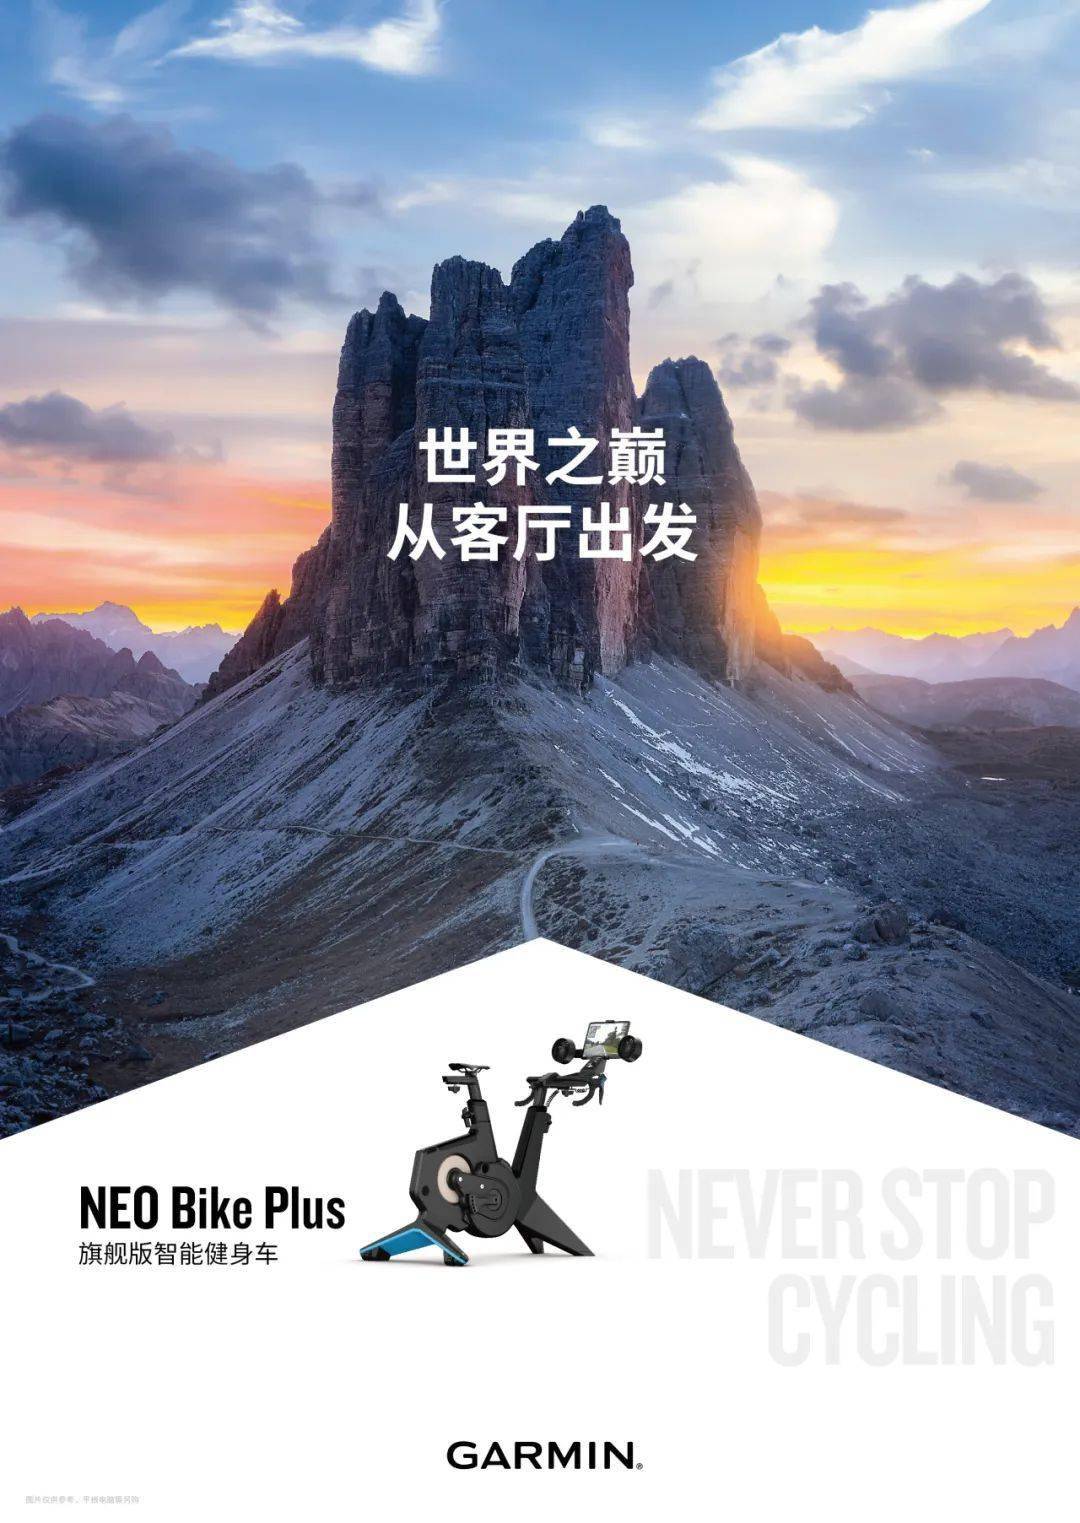 佳明发布 NEO Bike Plus 旗舰版智能健身车